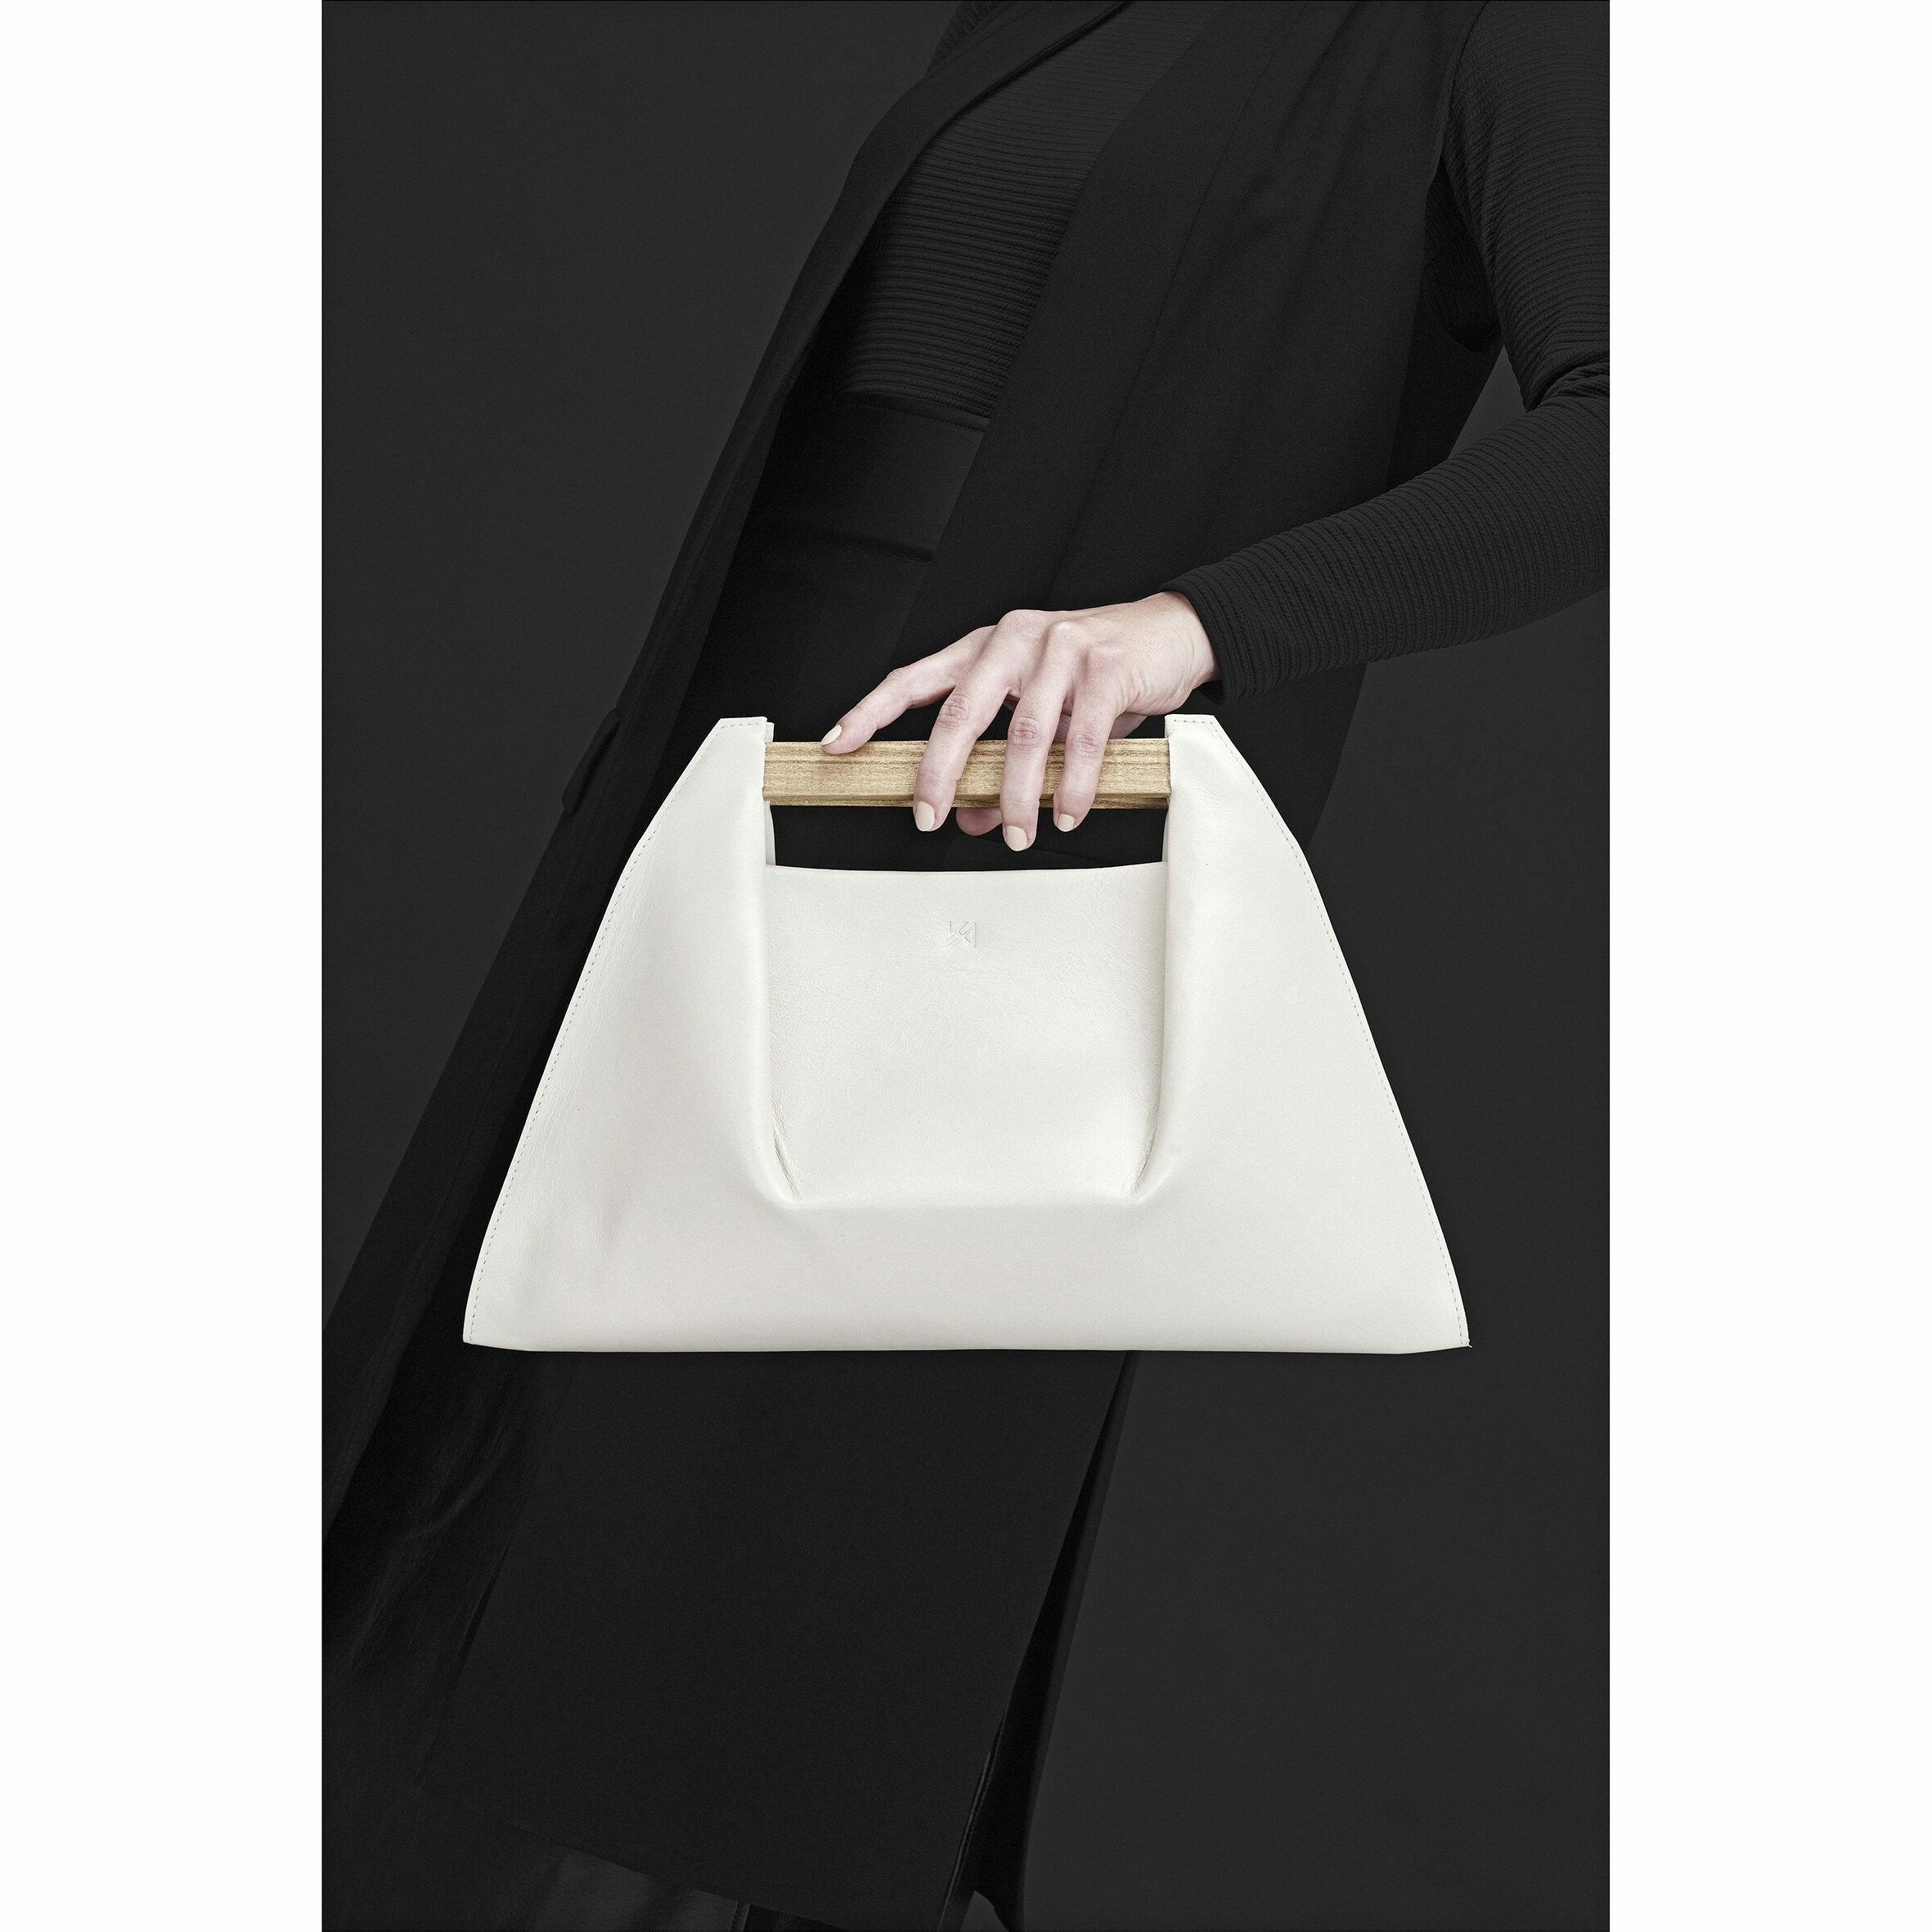 pons handbag agnes kovacs taschen handtasche weiss design accessoires